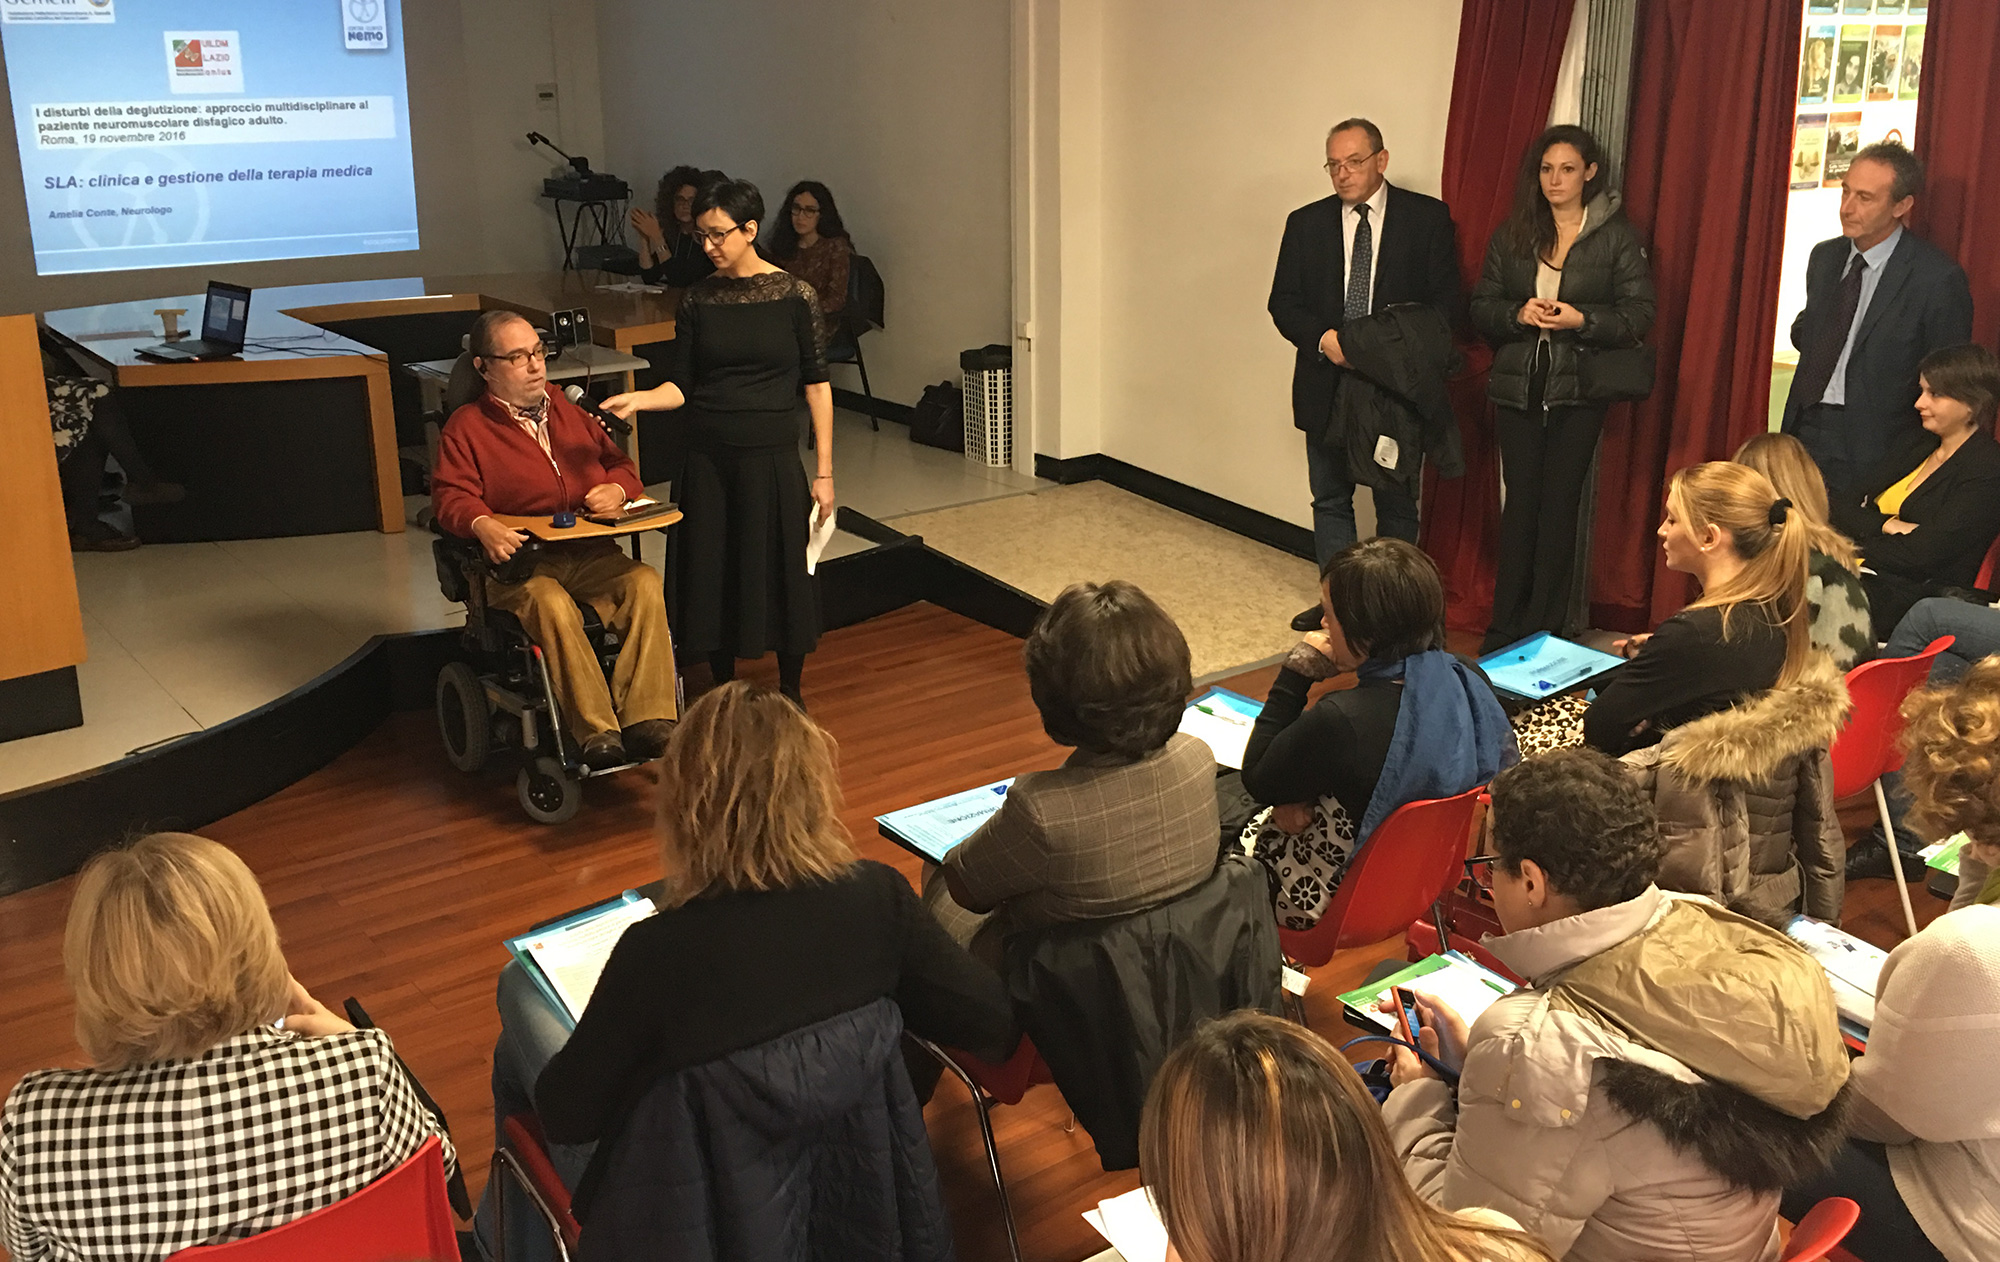 Marcello Tomassetti e Maria Elena Lombardo introducono l'incontro sulla disfagia